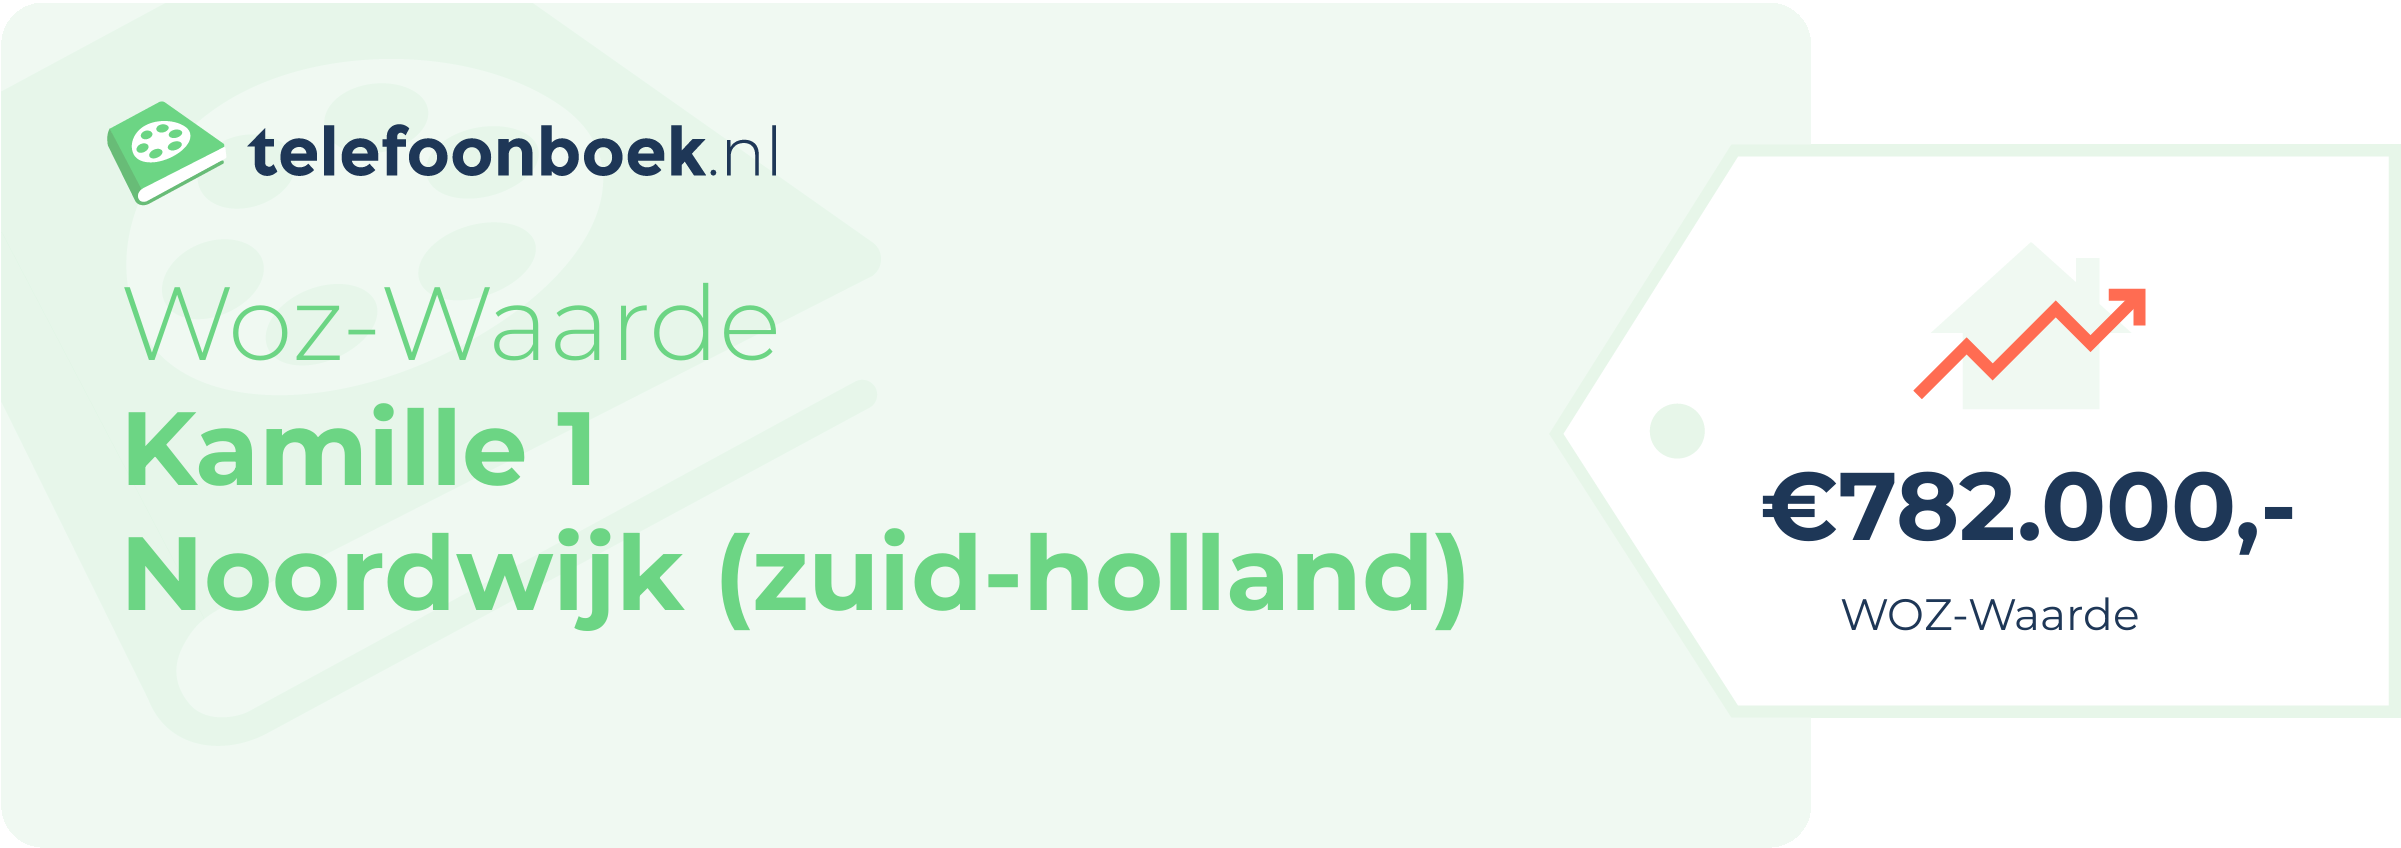 WOZ-waarde Kamille 1 Noordwijk (Zuid-Holland)